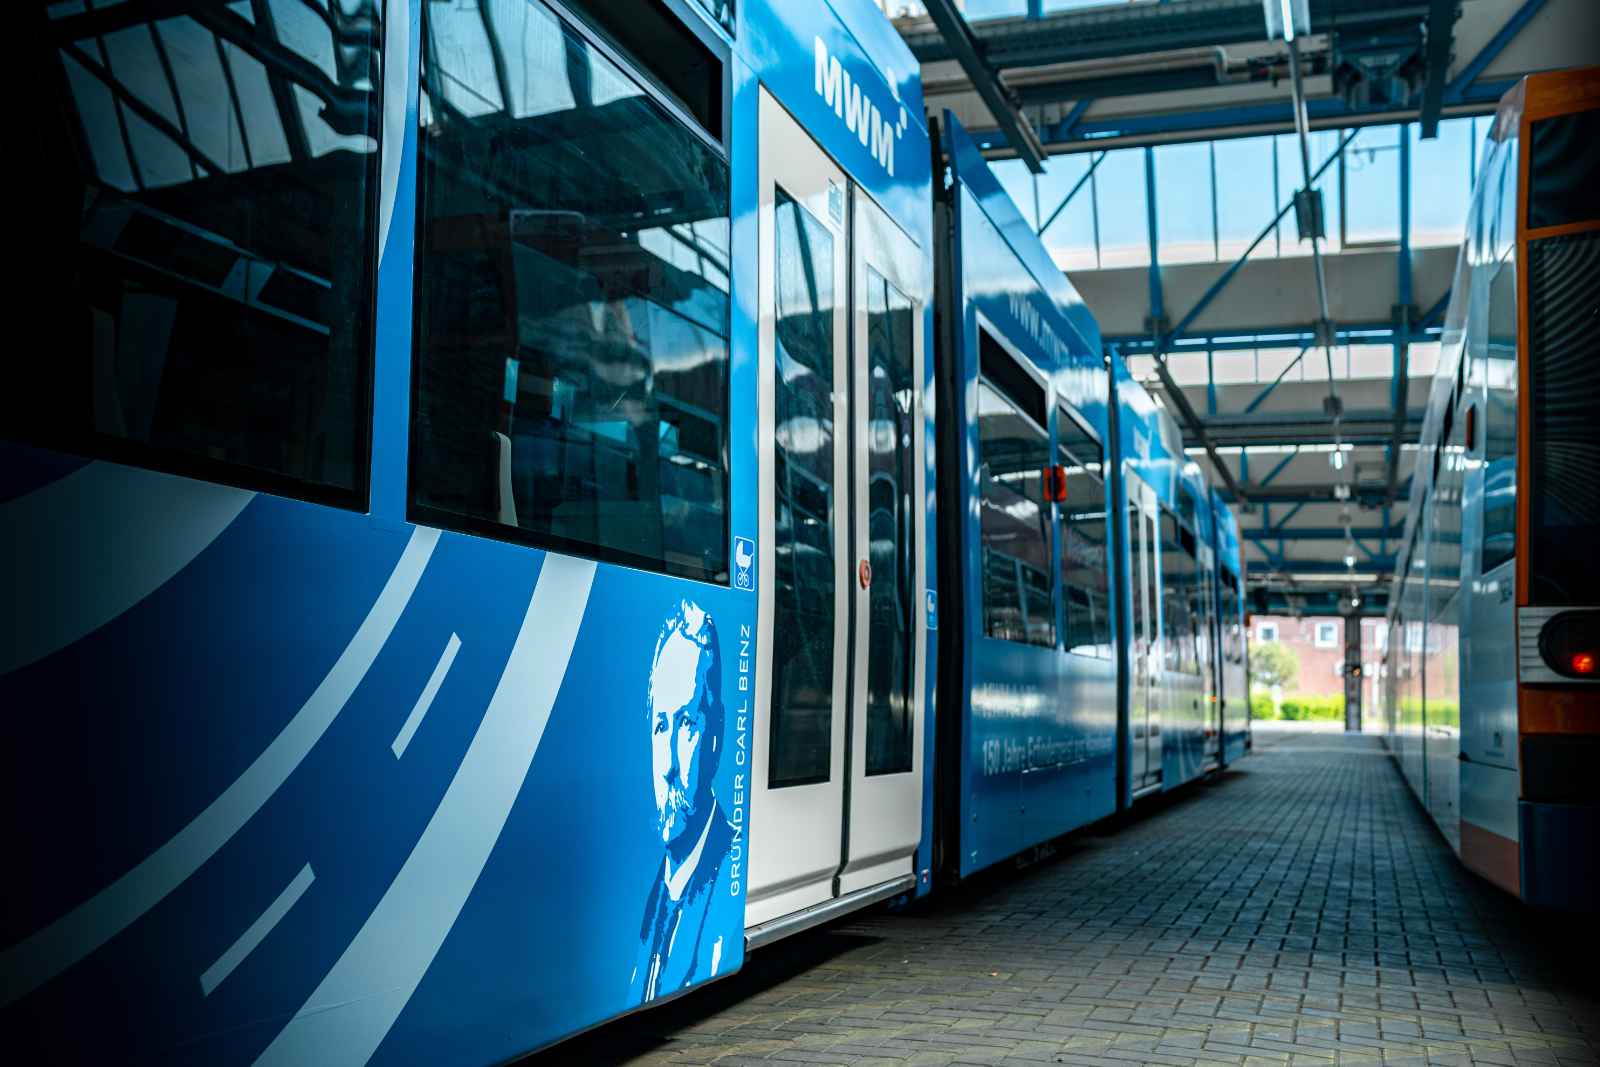 Трамвай, оформленный в фирменном стиле MWM, курсирует по маршрутам Мангейма – родного города компании.